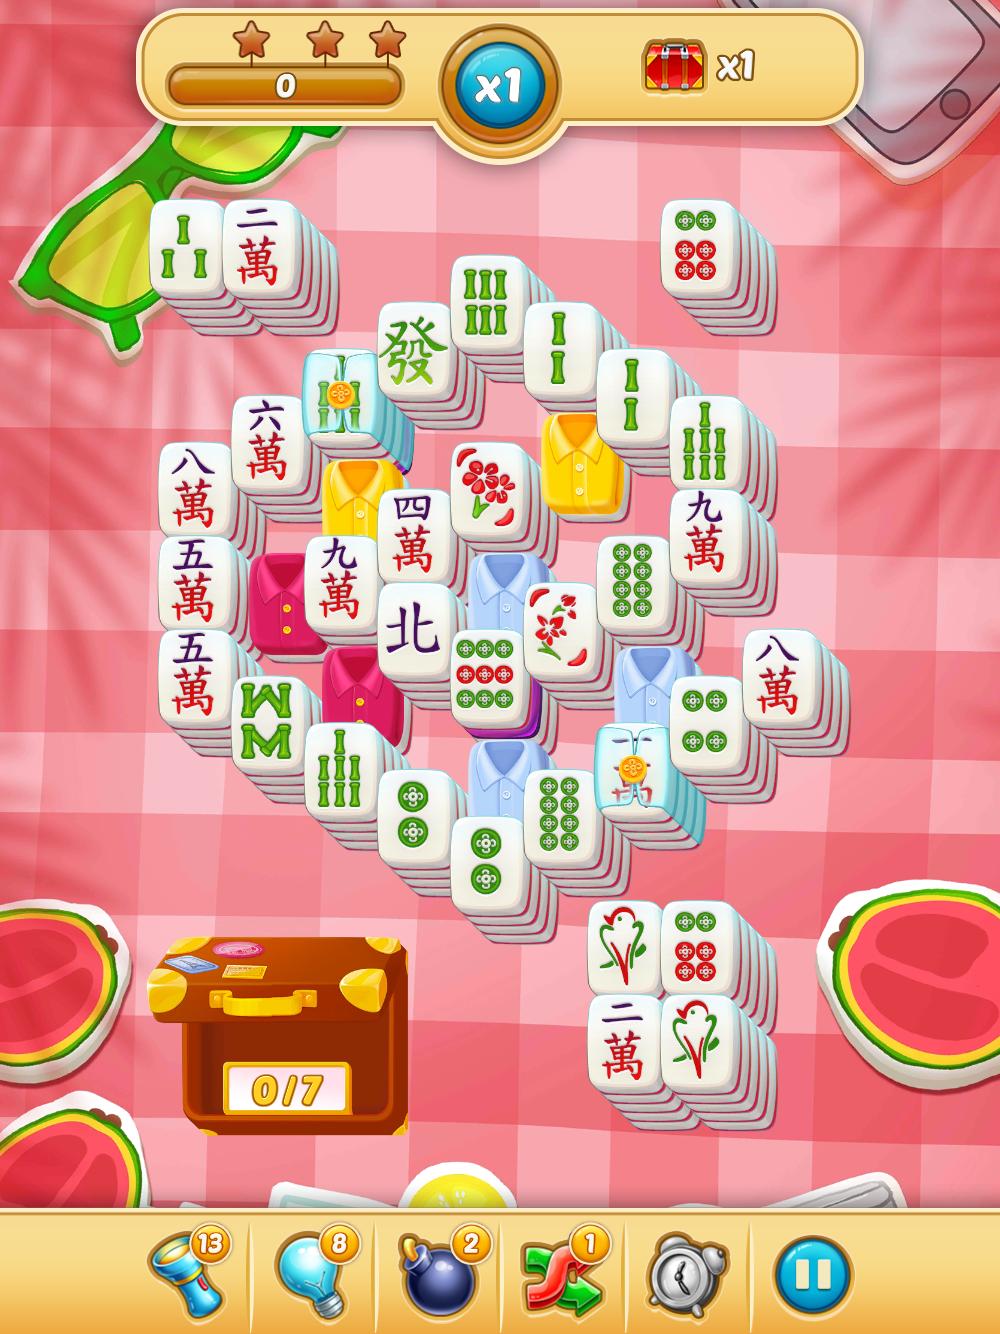 Mahjong City Tours Free Mahjong Classic Game 40.1.0 Screenshot 16